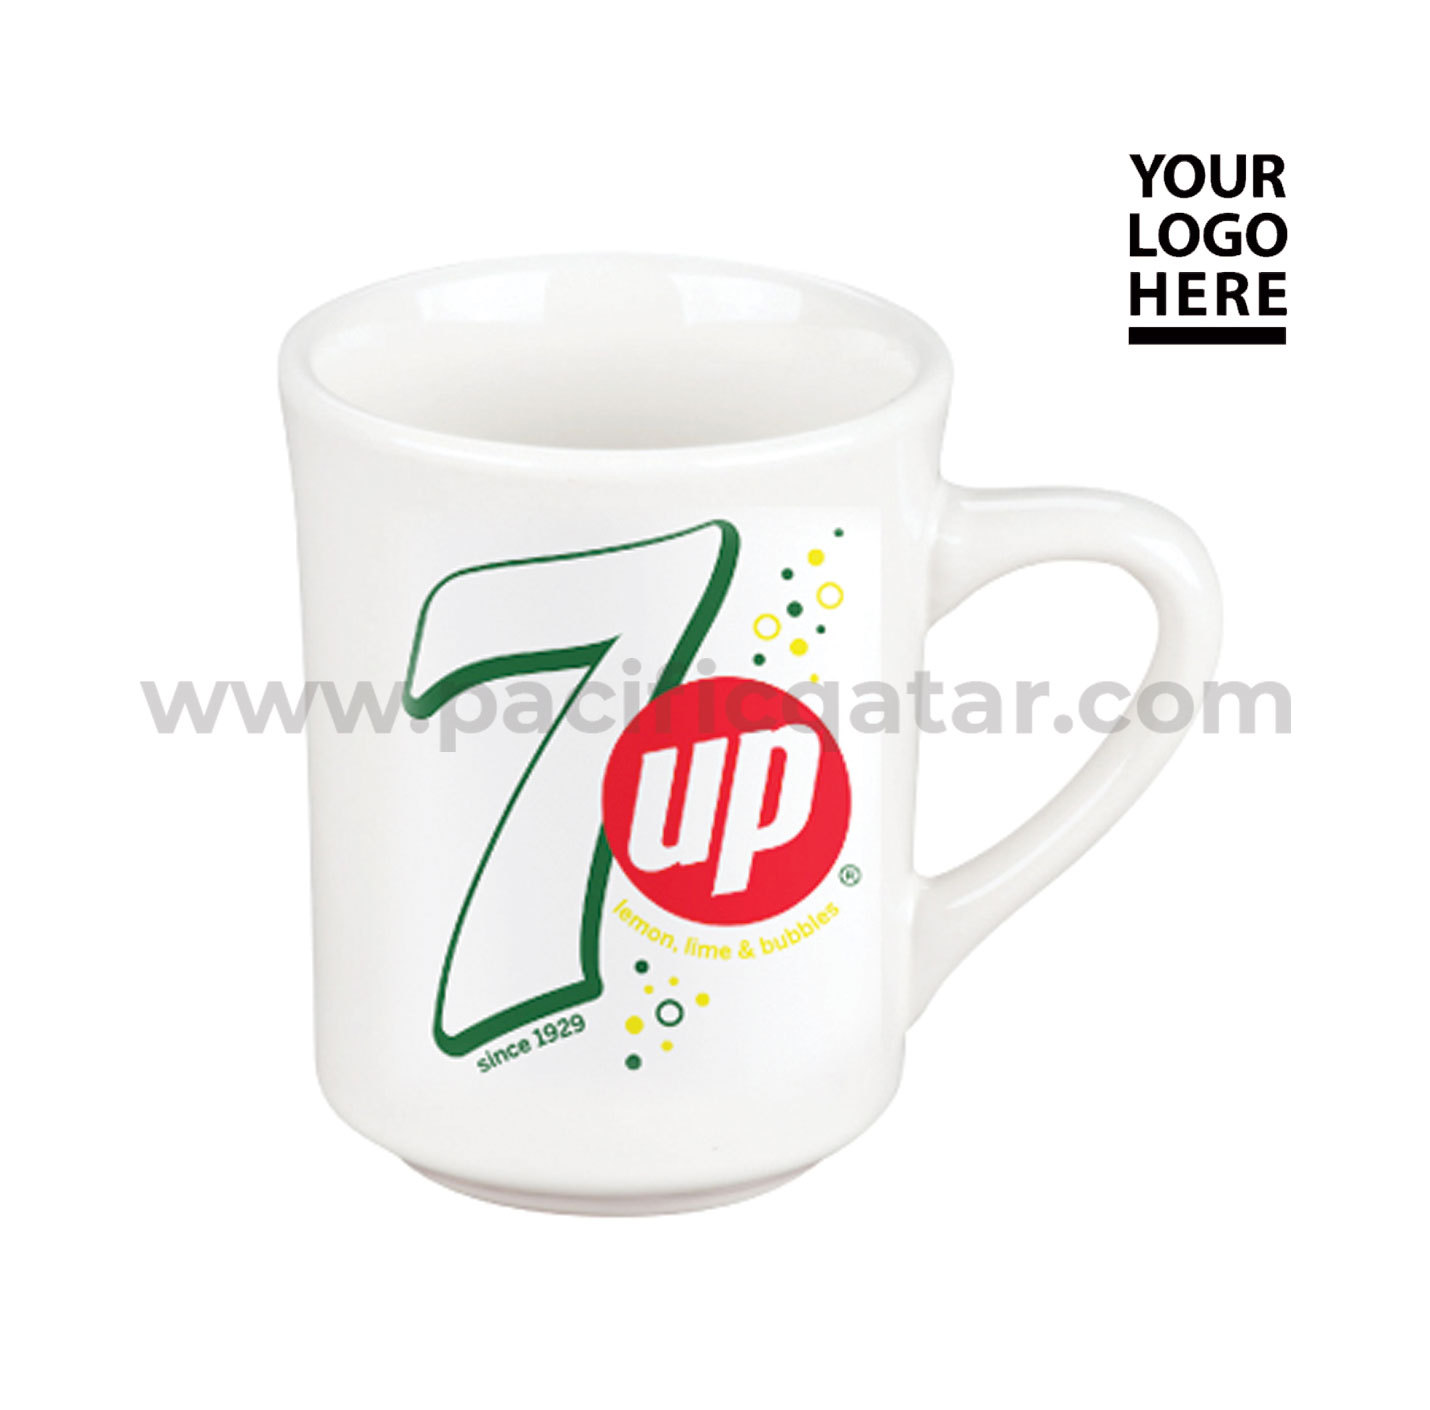 Sublimation Mug With 7 UP logo